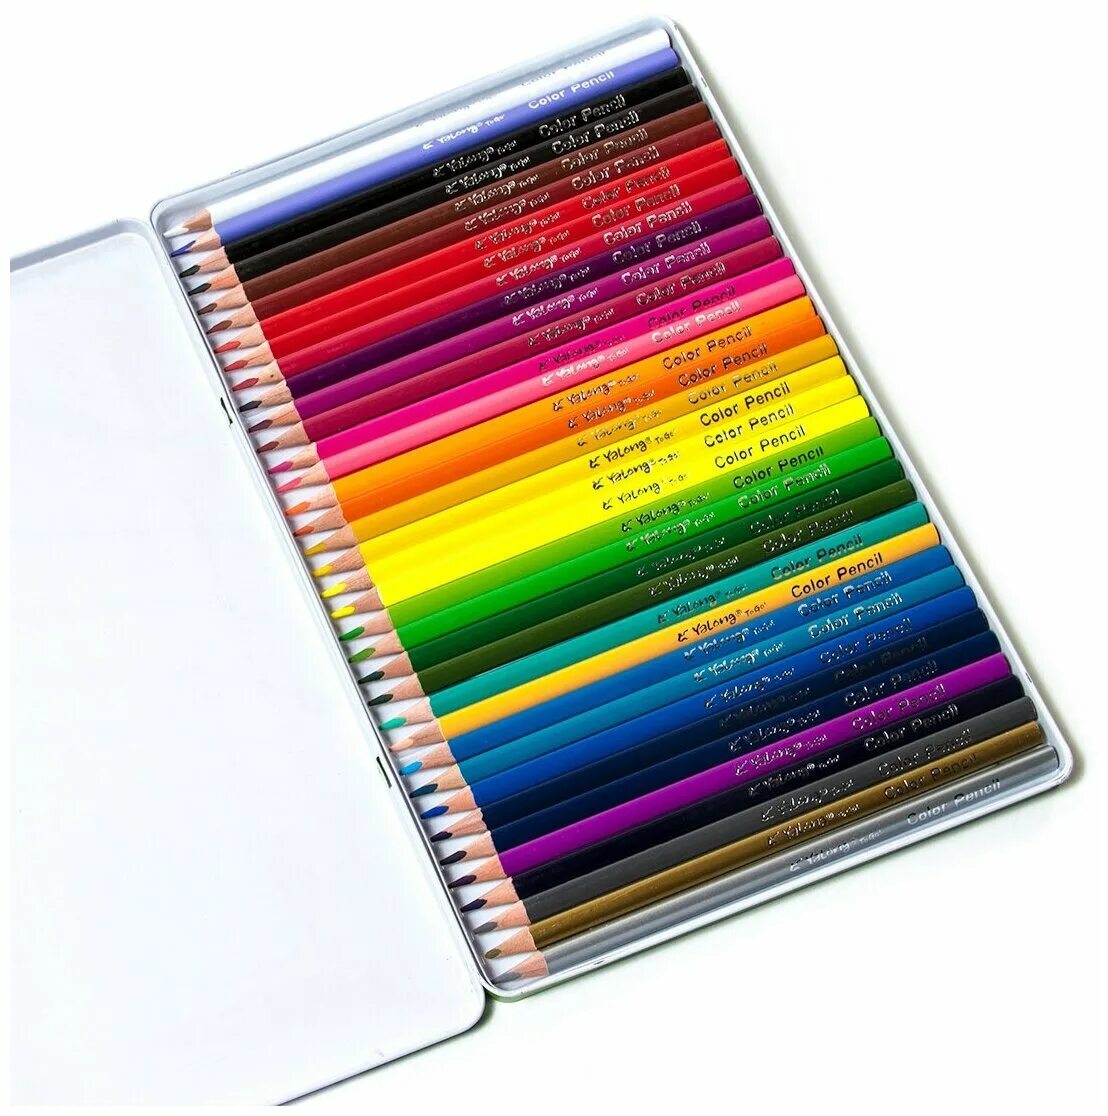 Цветные карандаши в пенале. Карандаши Colour Pencils Yalong. Карандаши цветные Yalong. Yalong Color Pencil yl 81500 карандаши. Карандаши Yalong 24 цвета.